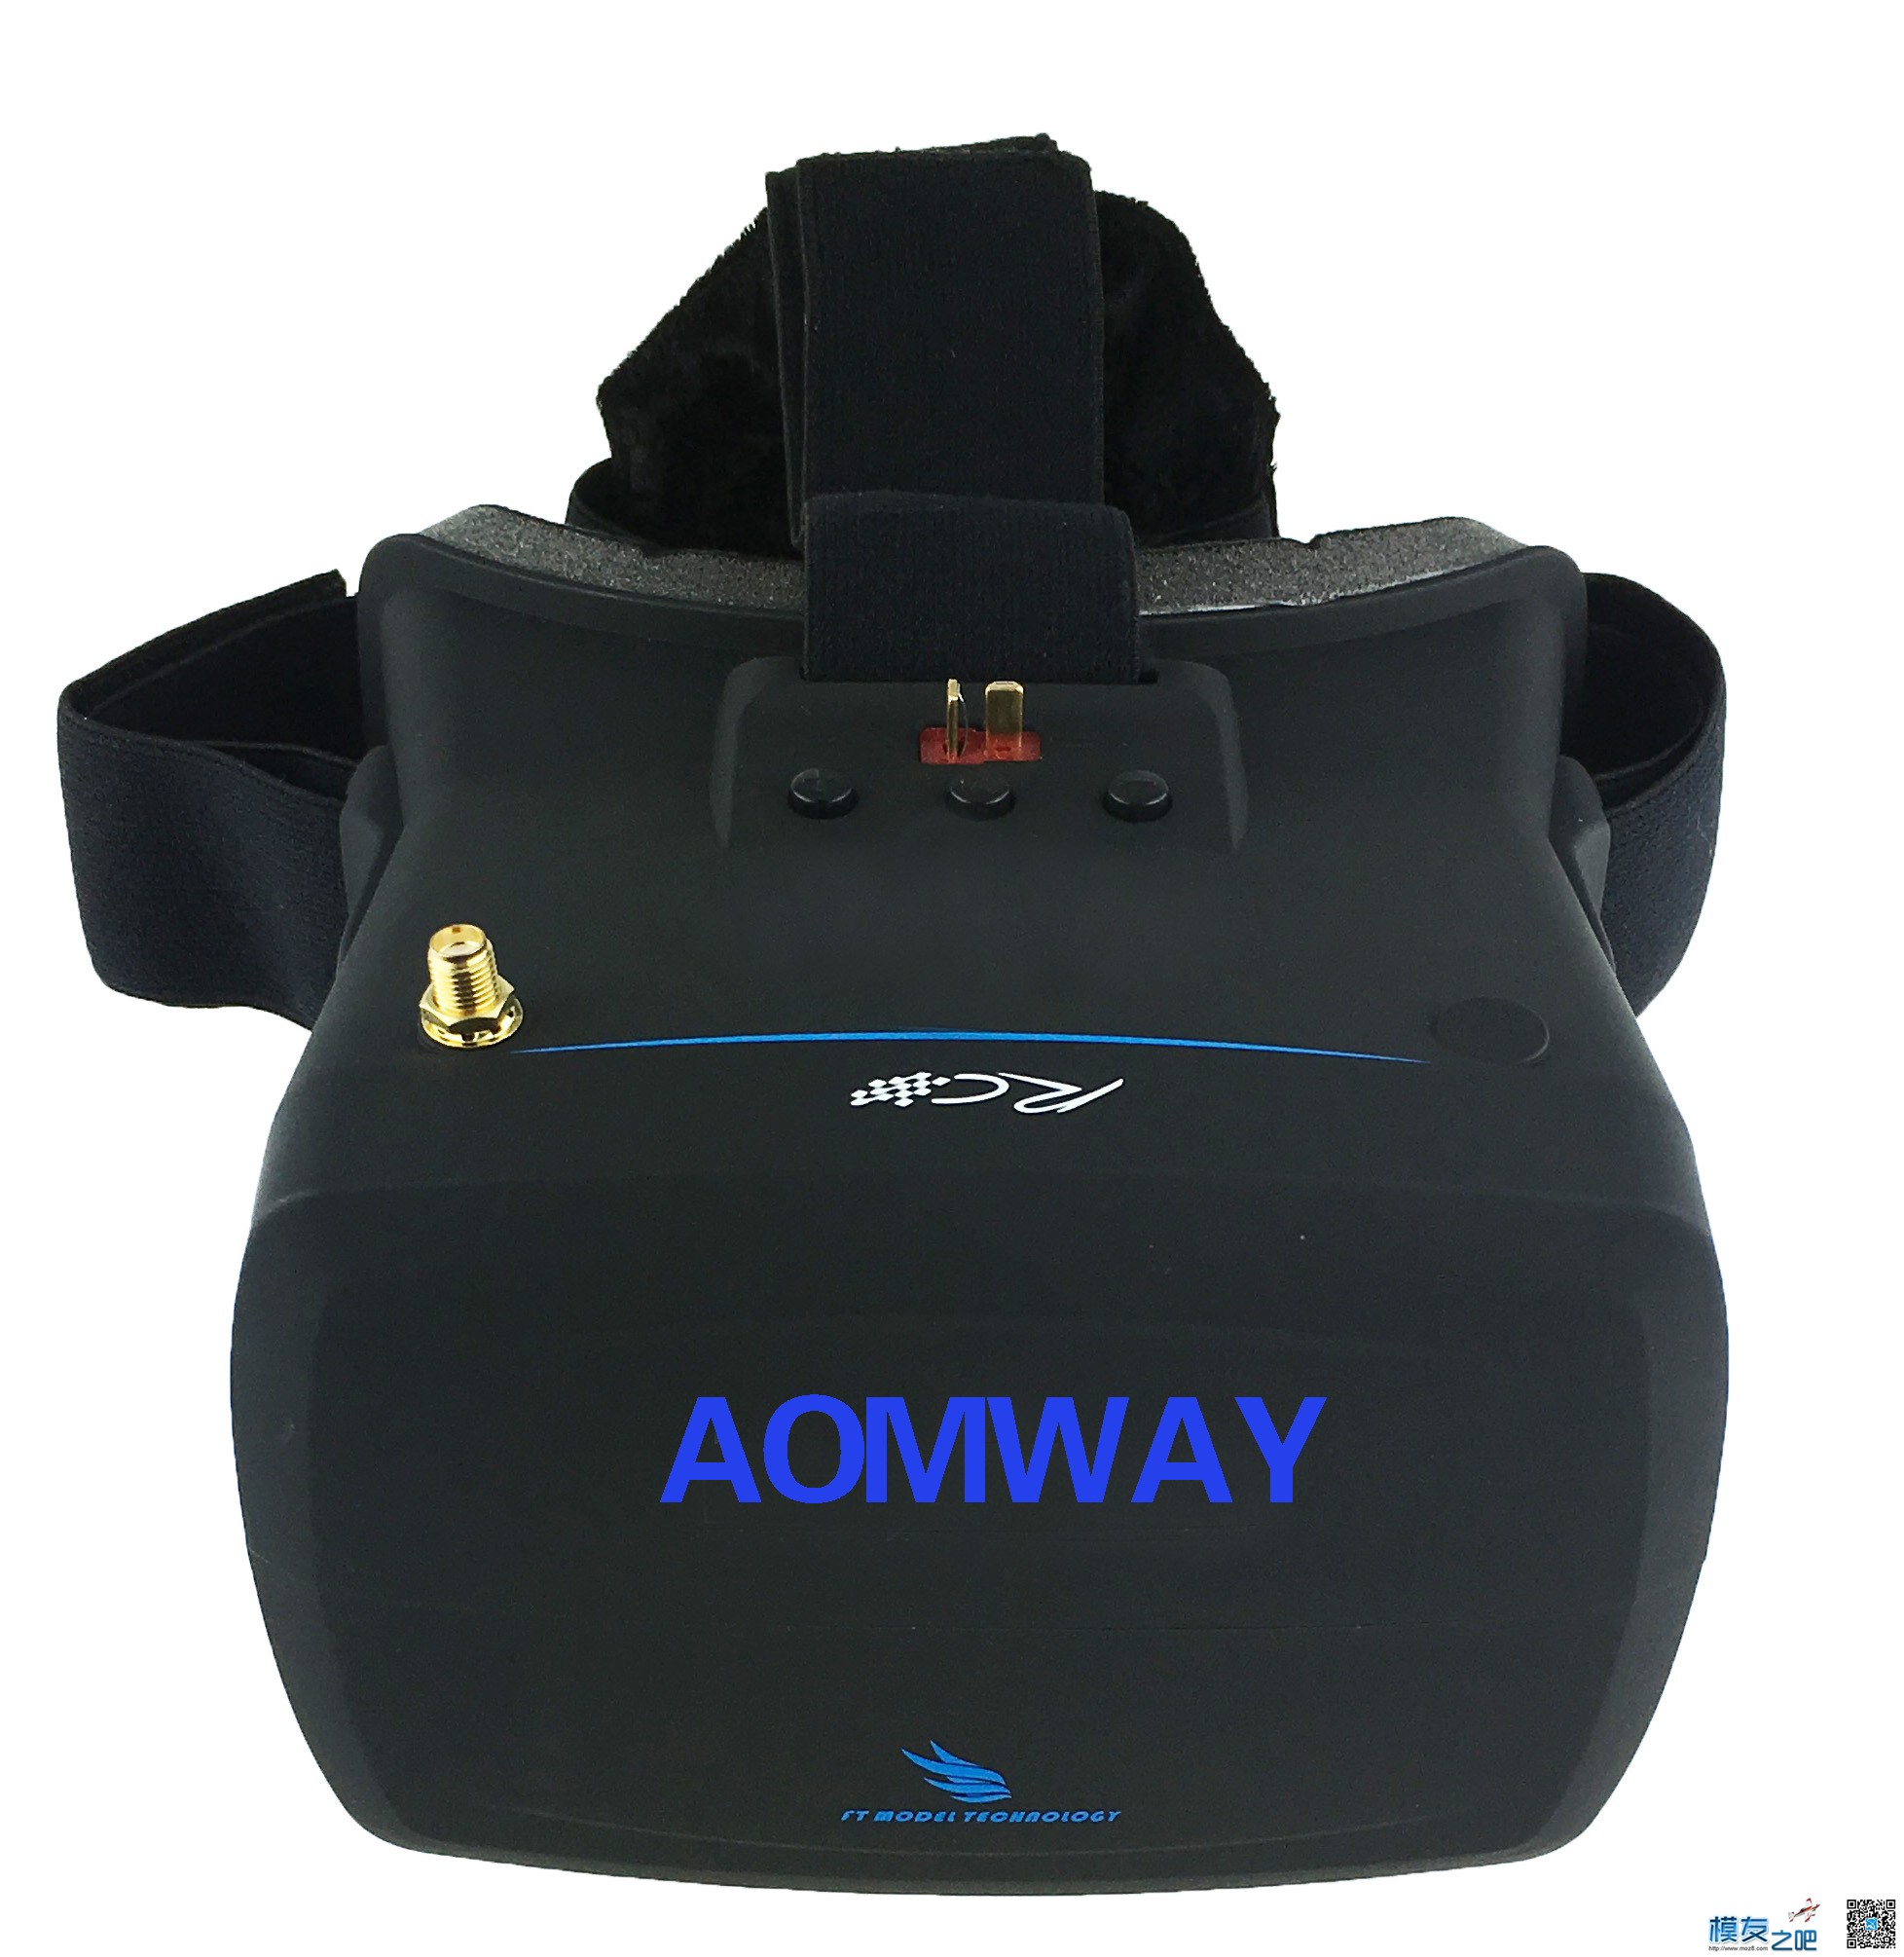 【模友之吧】AOMWAY VR Goggles V1 视频眼镜测试团购活动！ 电池,天线,图传,接收机,论坛活动 作者:飞天狼 1314 